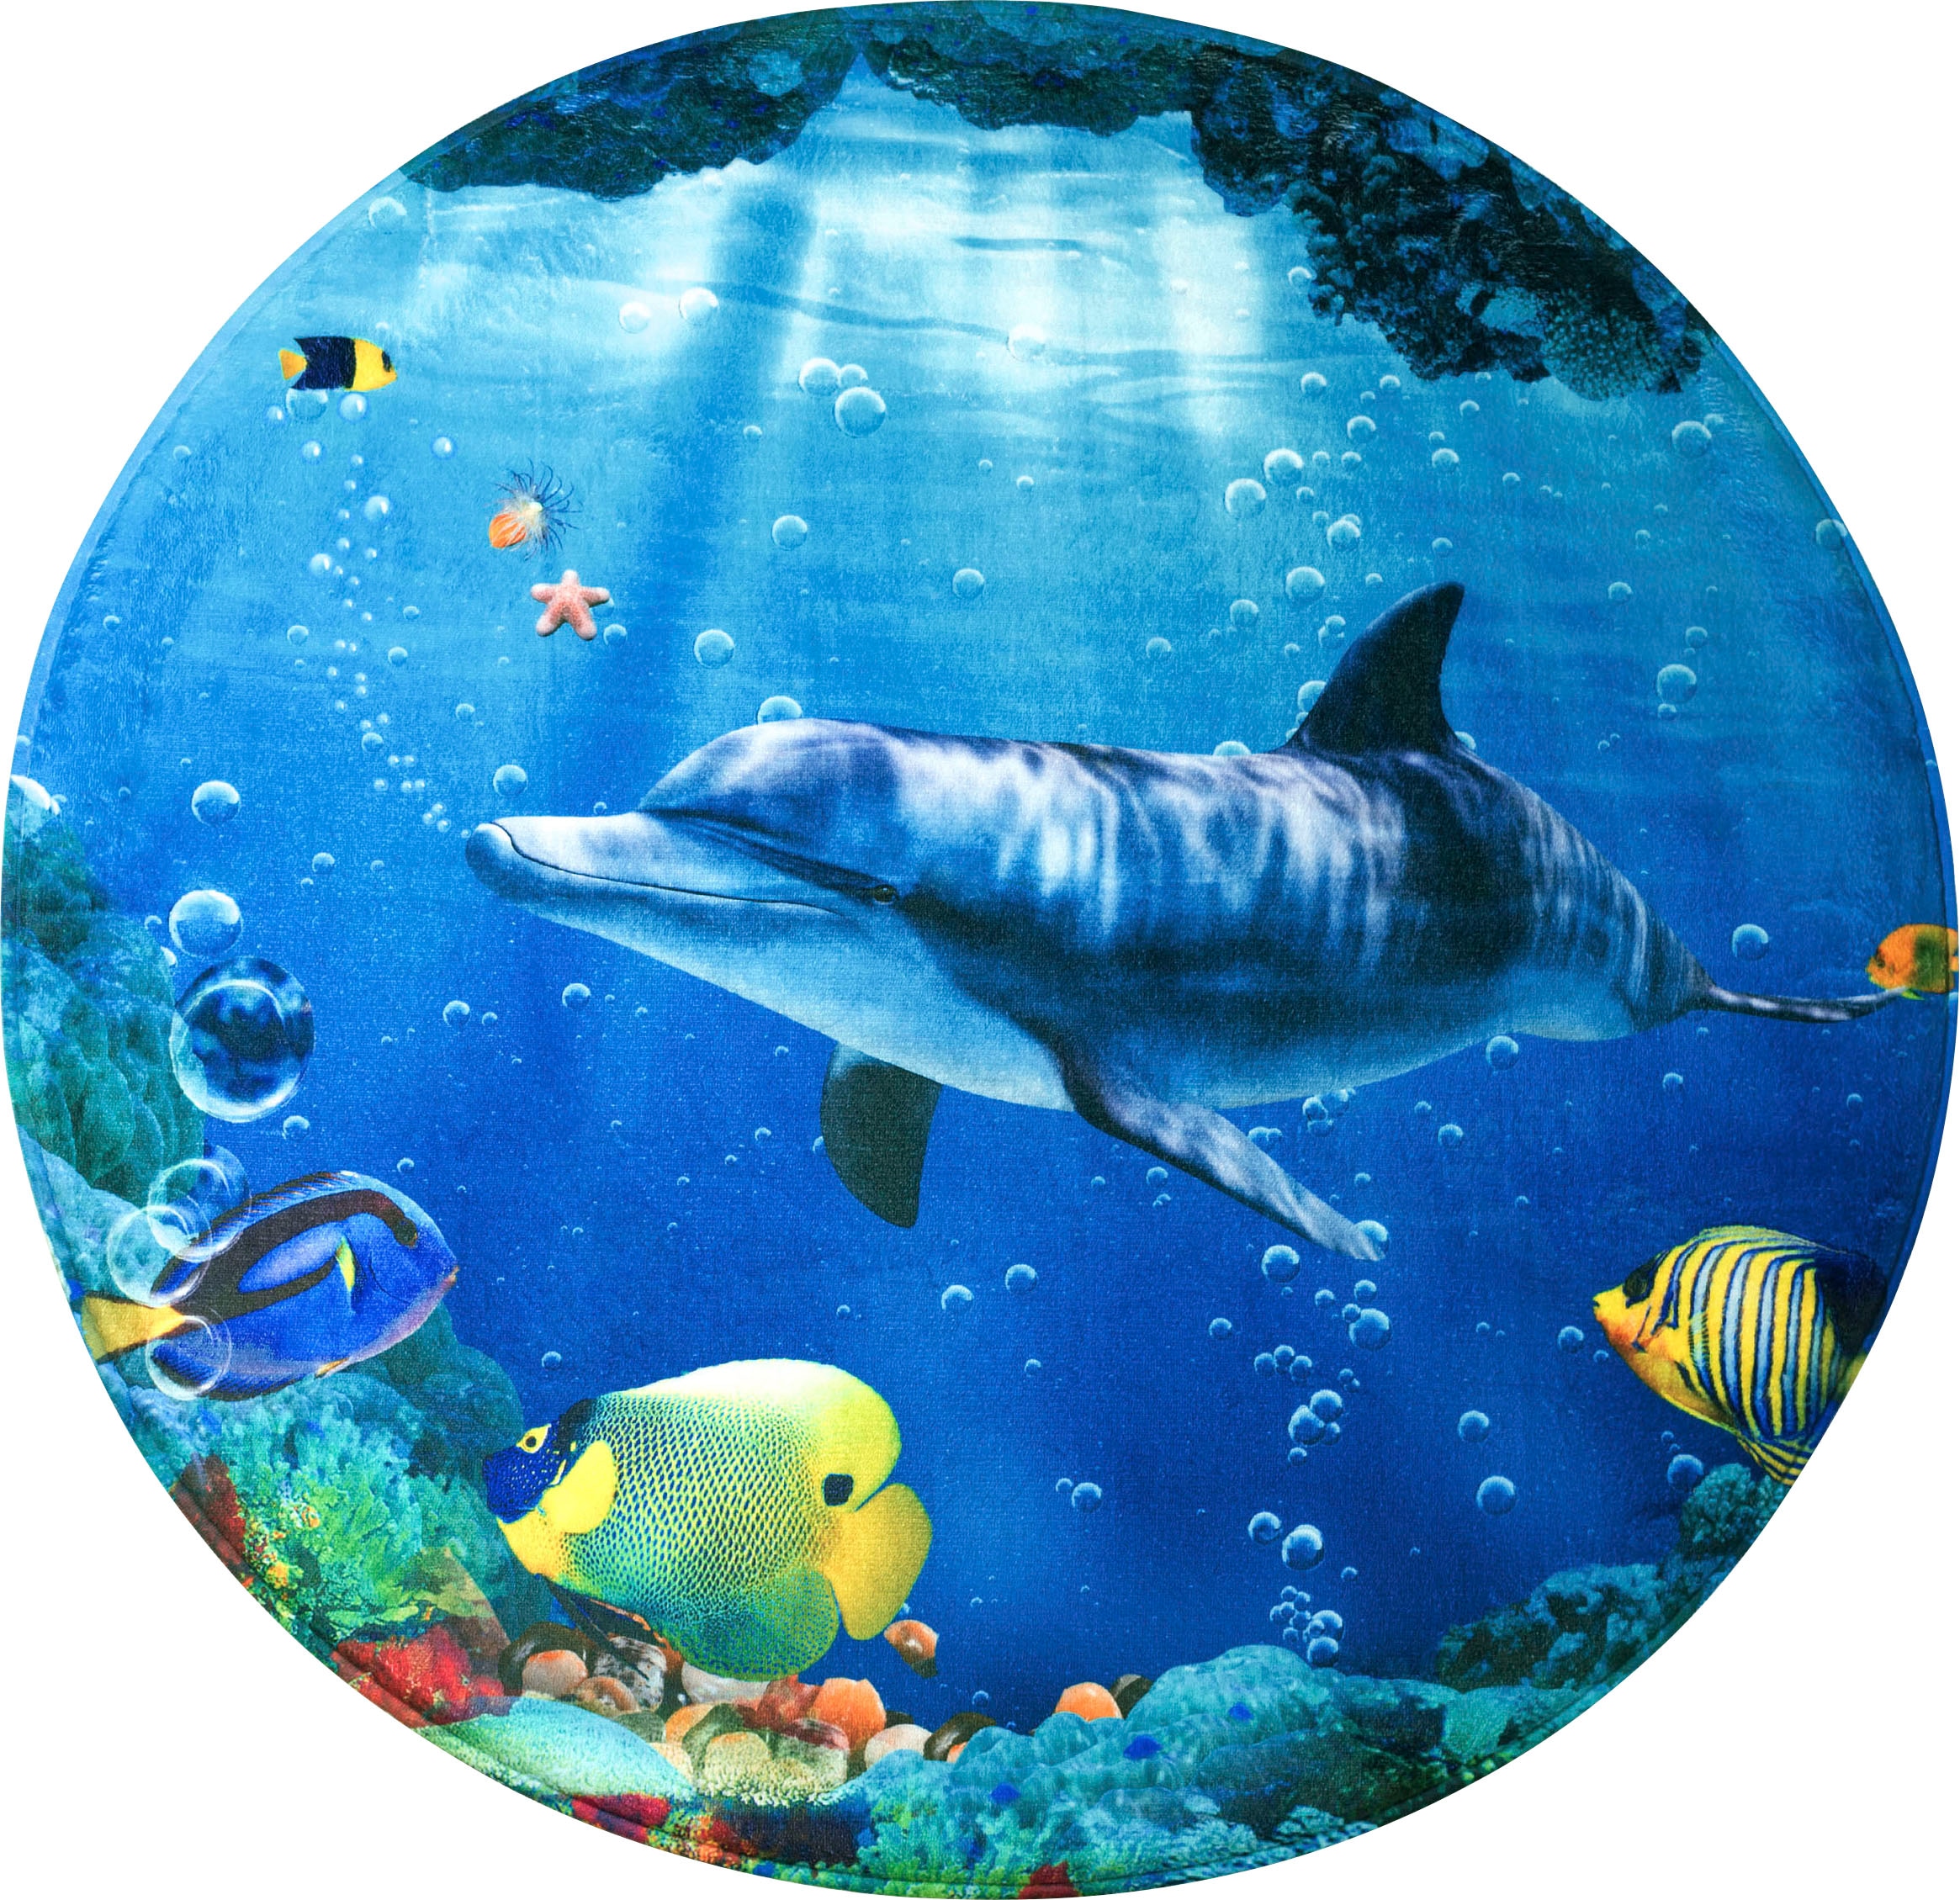 Schaum-Badematte »Delphin Korallen«, Höhe 15 mm, Memory Schaum-rutschhemmend...